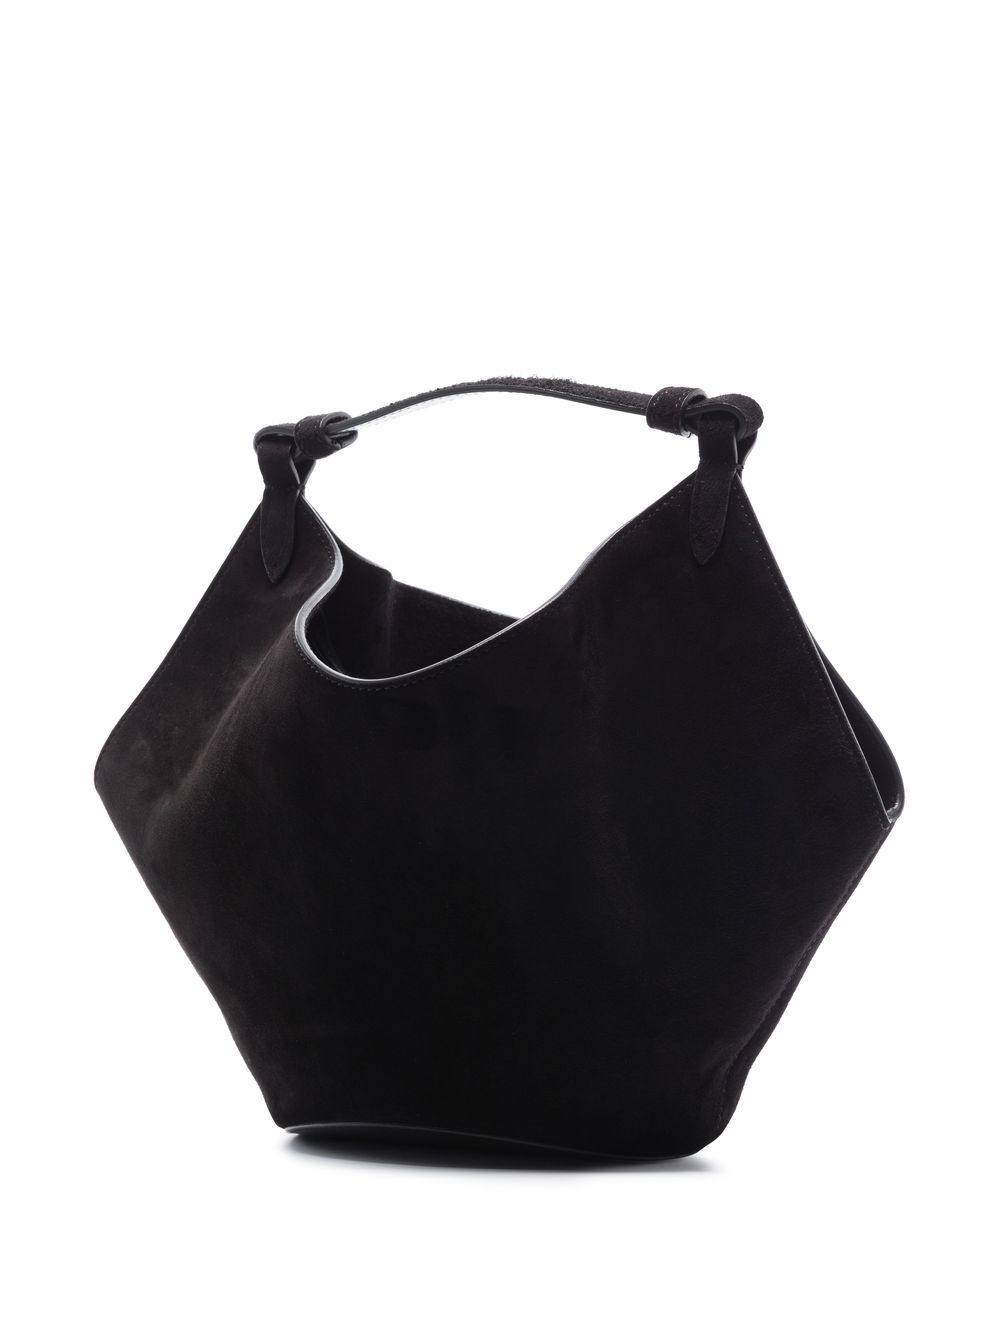 KHAITE- Lotus Mini Leather Handbag